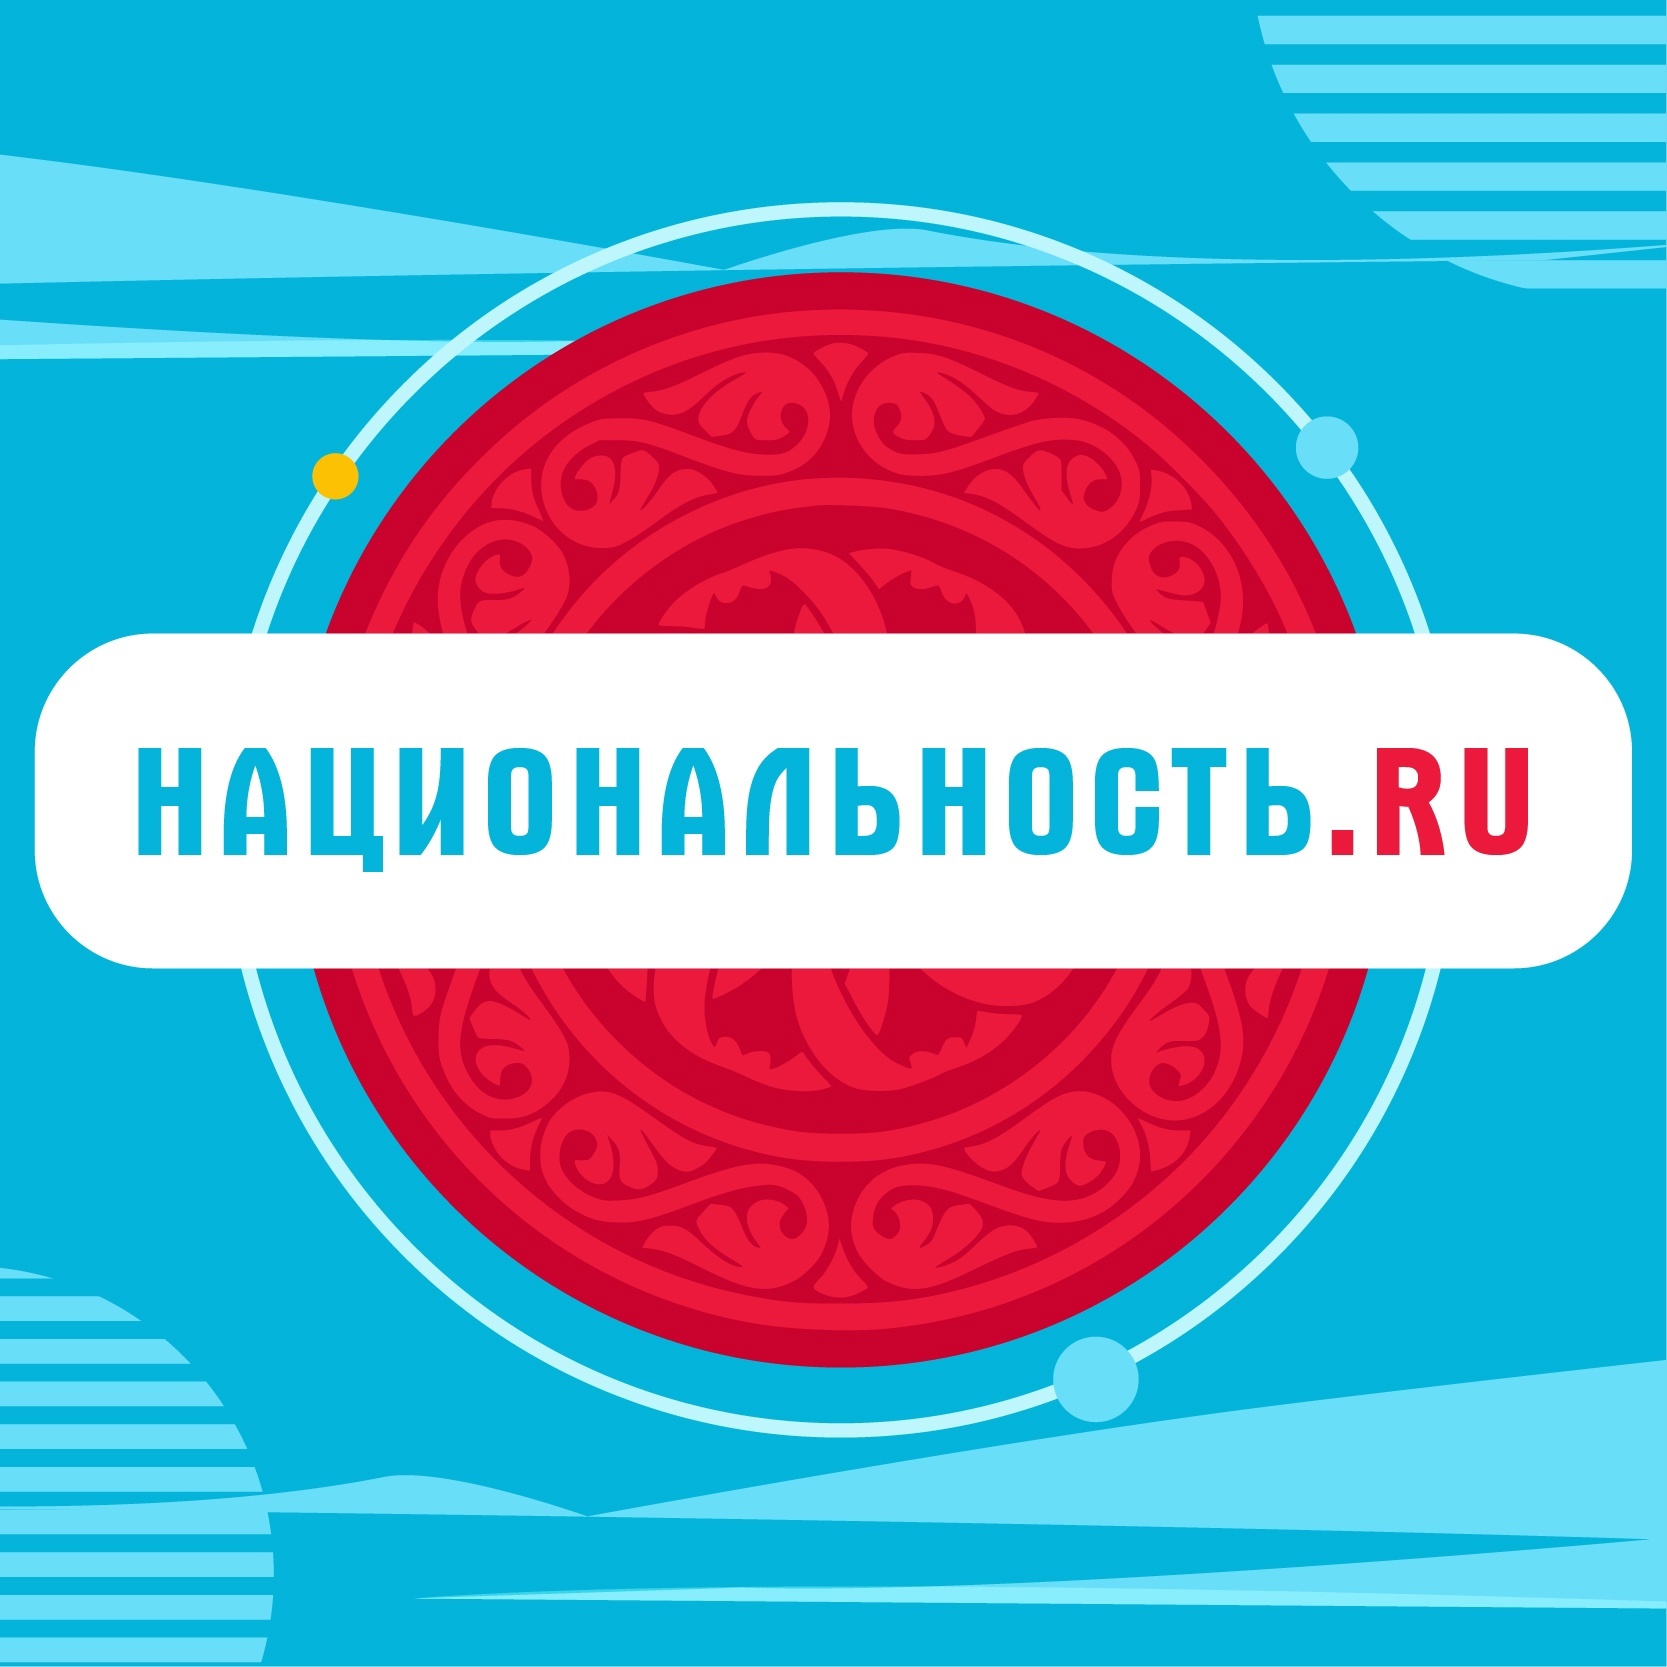 Хотим познакомить вас с уникальным проектом Национальность.ru!